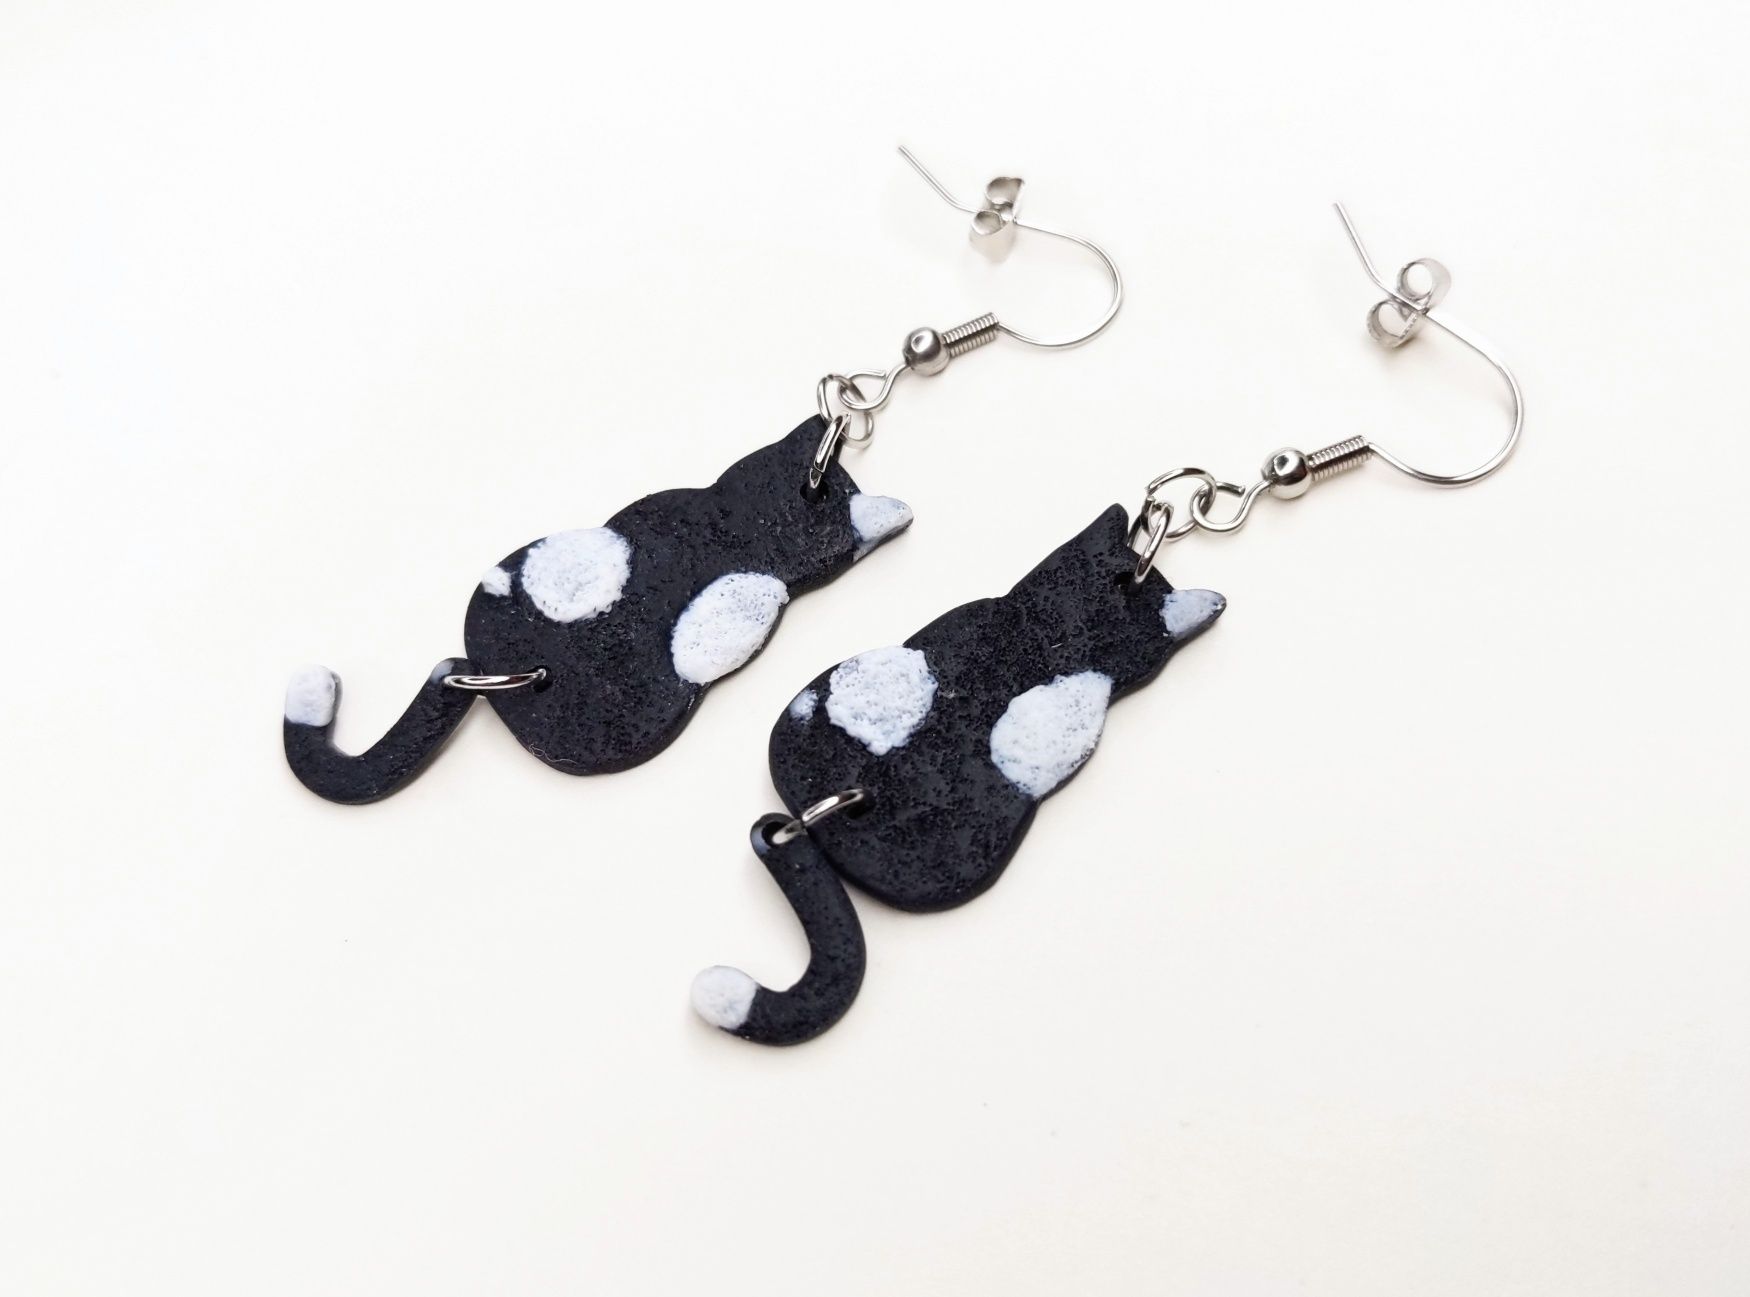 Kolczyki czarno-białe koty handmade